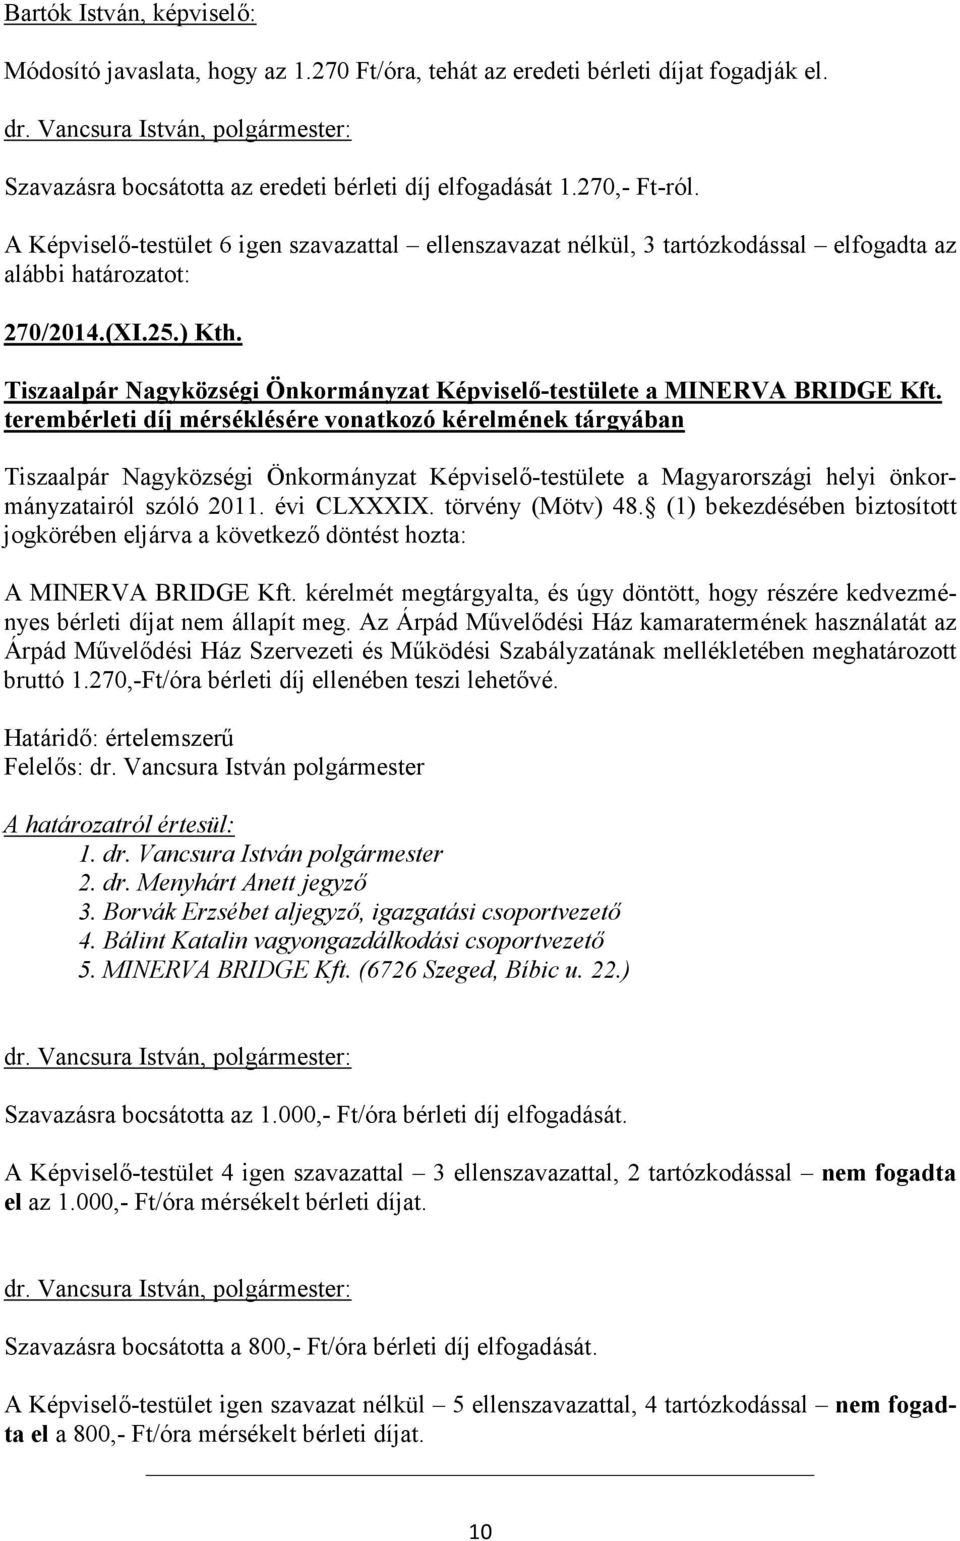 terembérleti díj mérséklésére vonatkozó kérelmének tárgyában Tiszaalpár Nagyközségi Önkormányzat Képviselő-testülete a Magyarországi helyi önkormányzatairól szóló 2011. évi CLXXXIX. törvény (Mötv) 48.